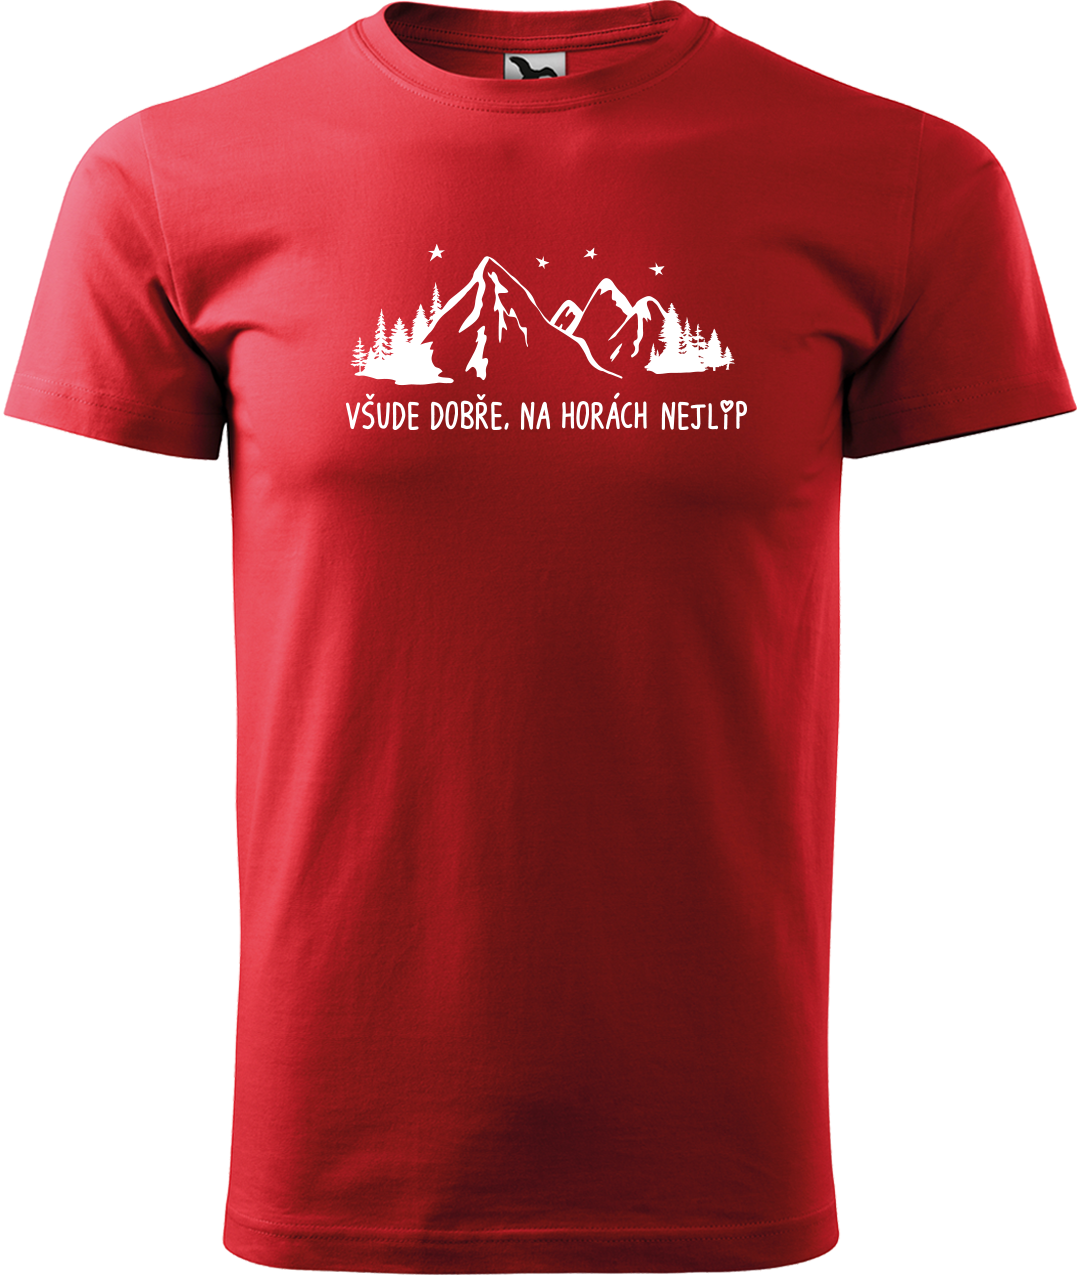 Pánské tričko na hory - Všude dobře, na horách nejlíp Velikost: S, Barva: Červená (07)